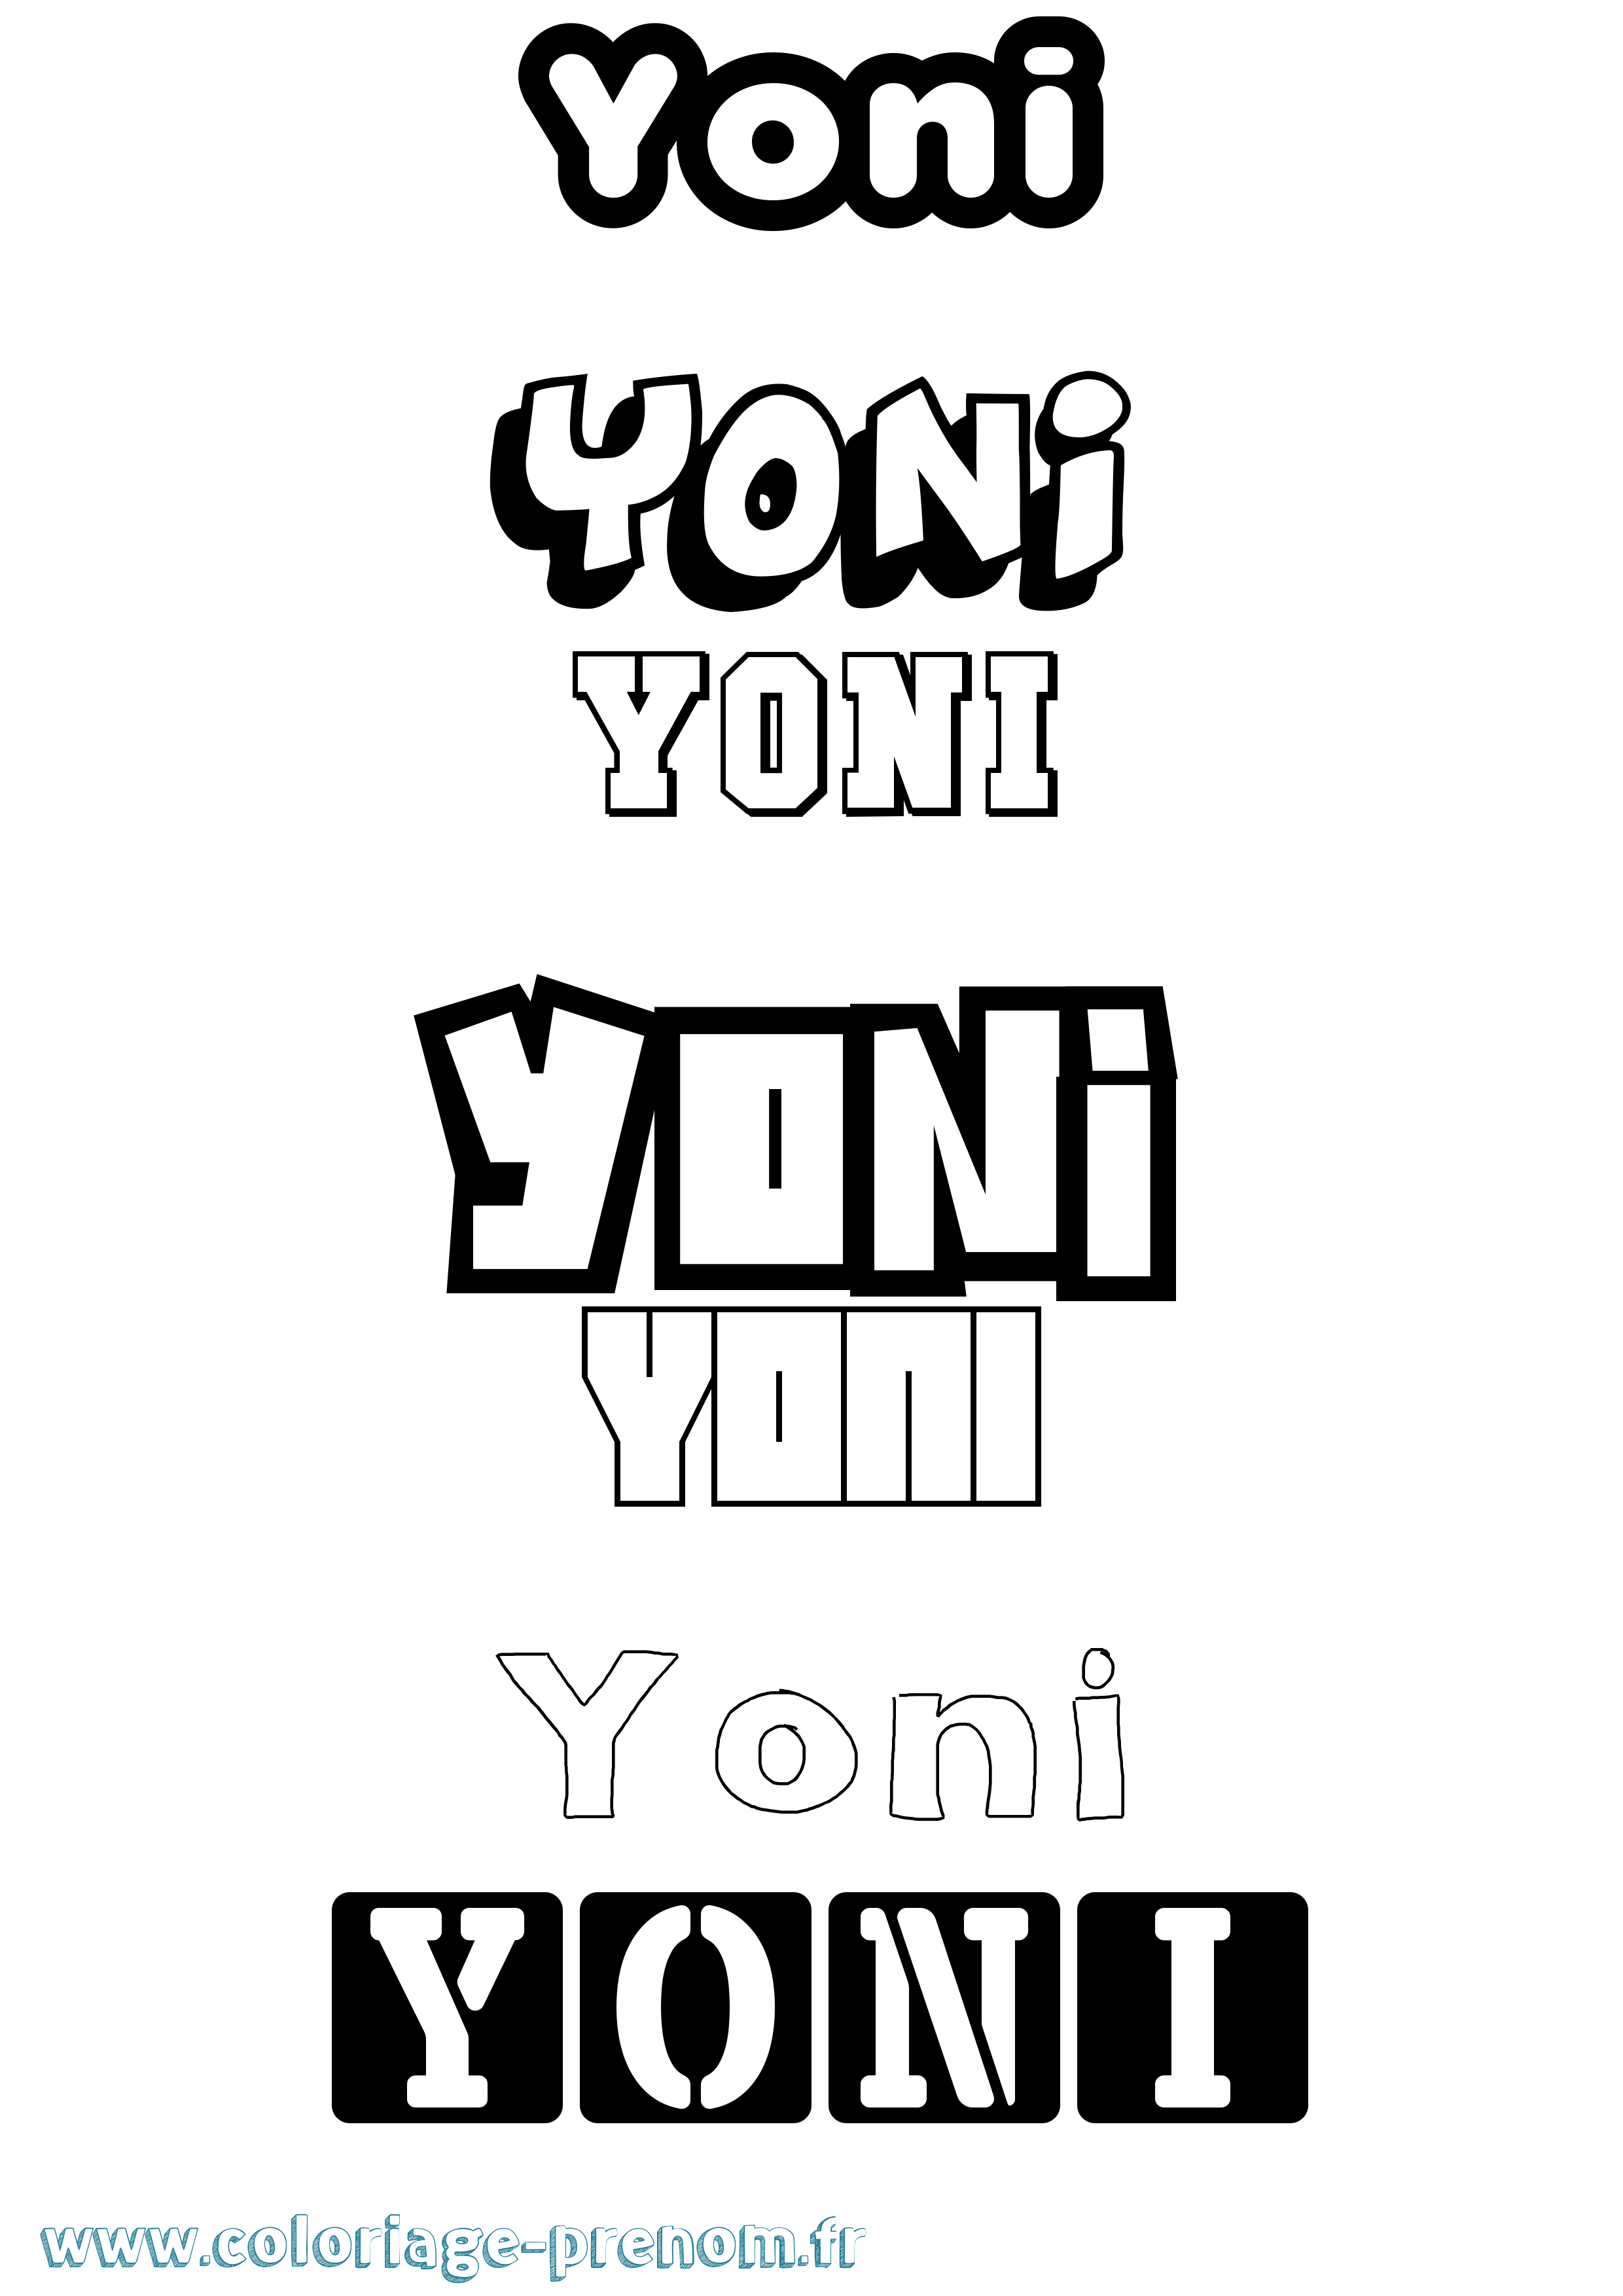 Coloriage prénom Yoni